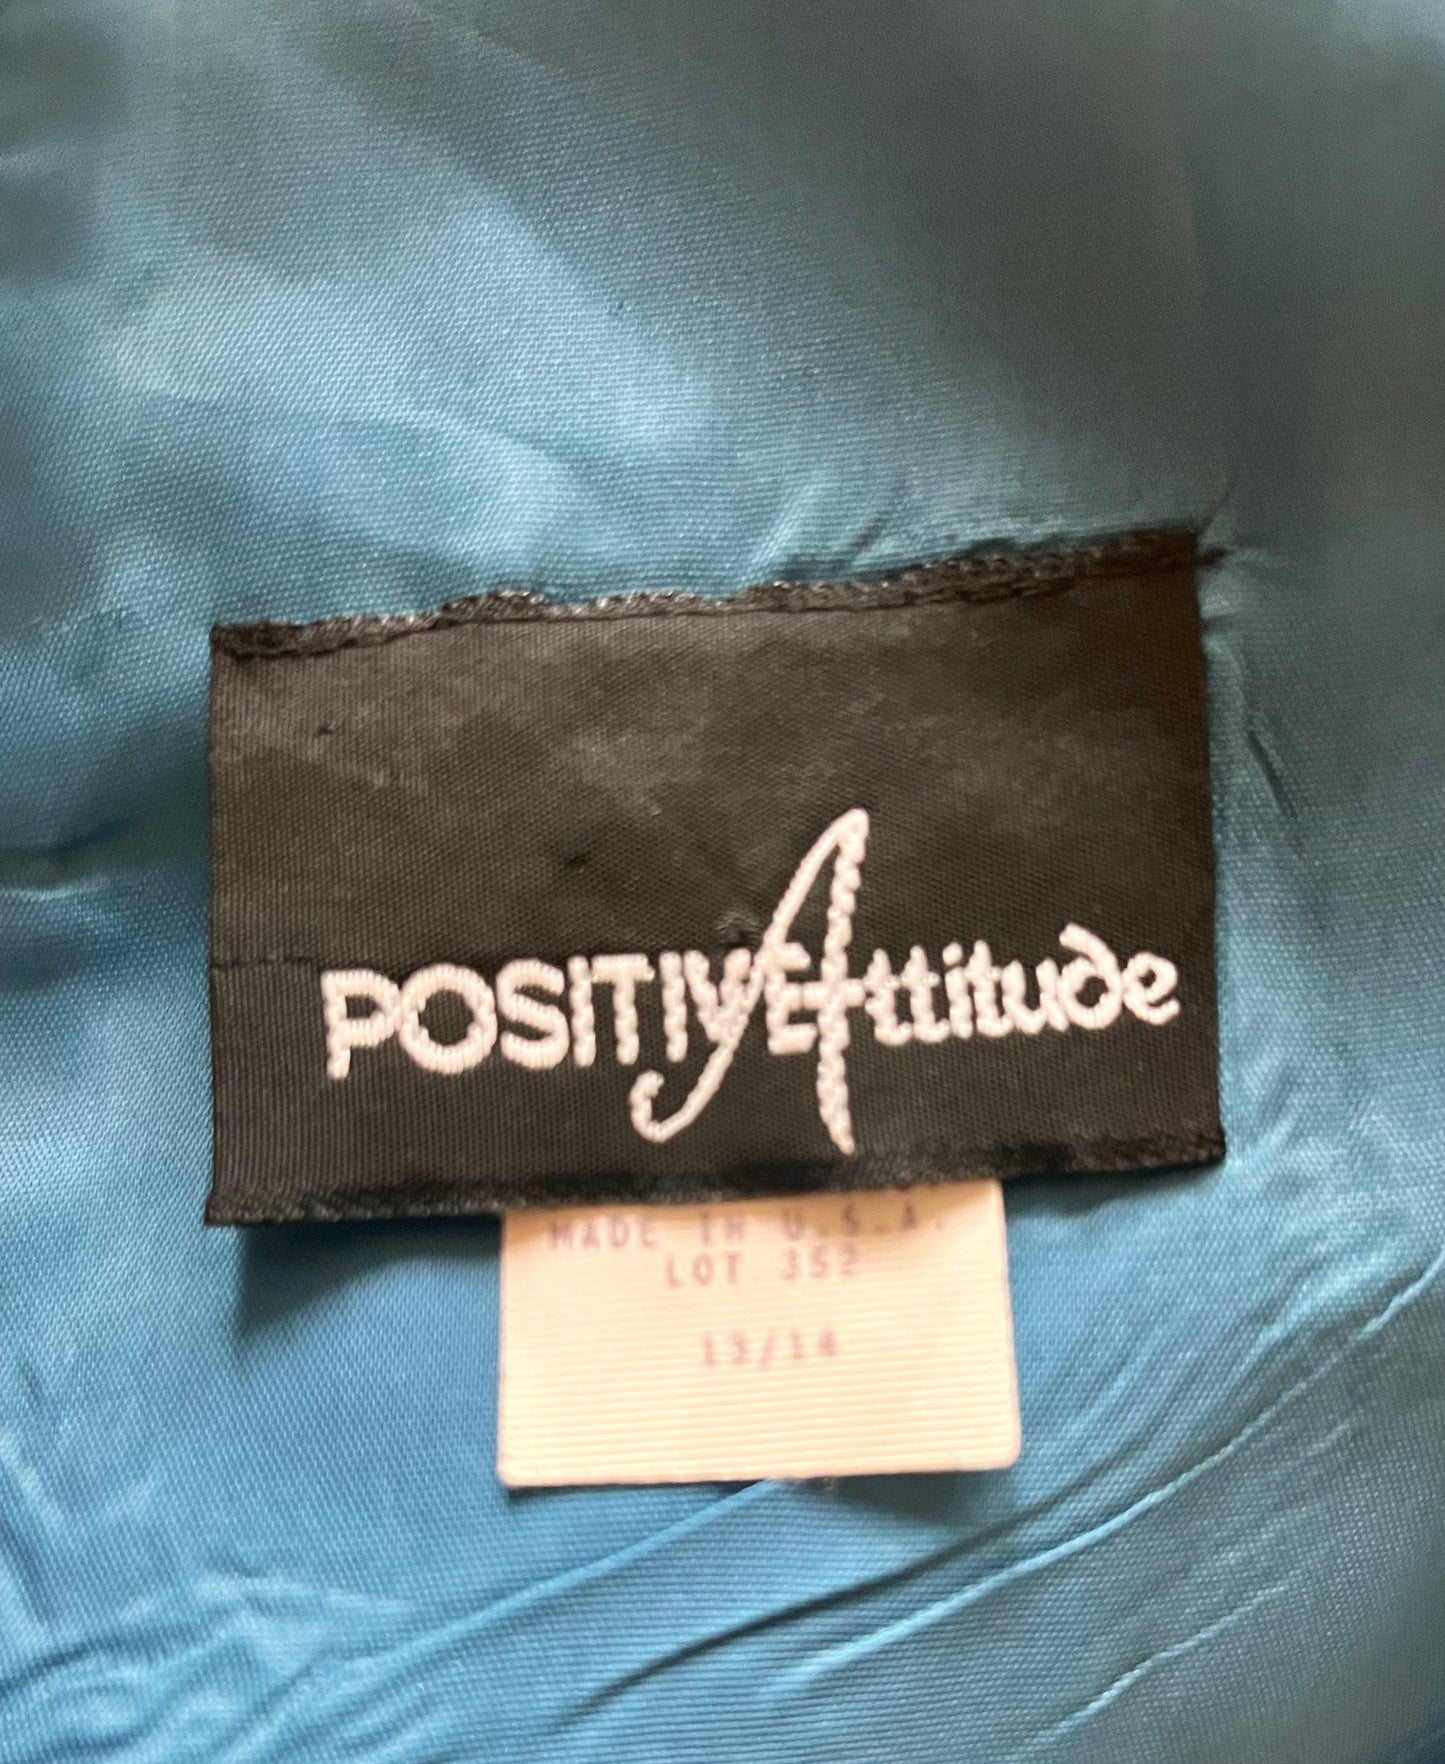 Vintage 1990's "Positive Attitude" Blue Sheath Cut-out Dress